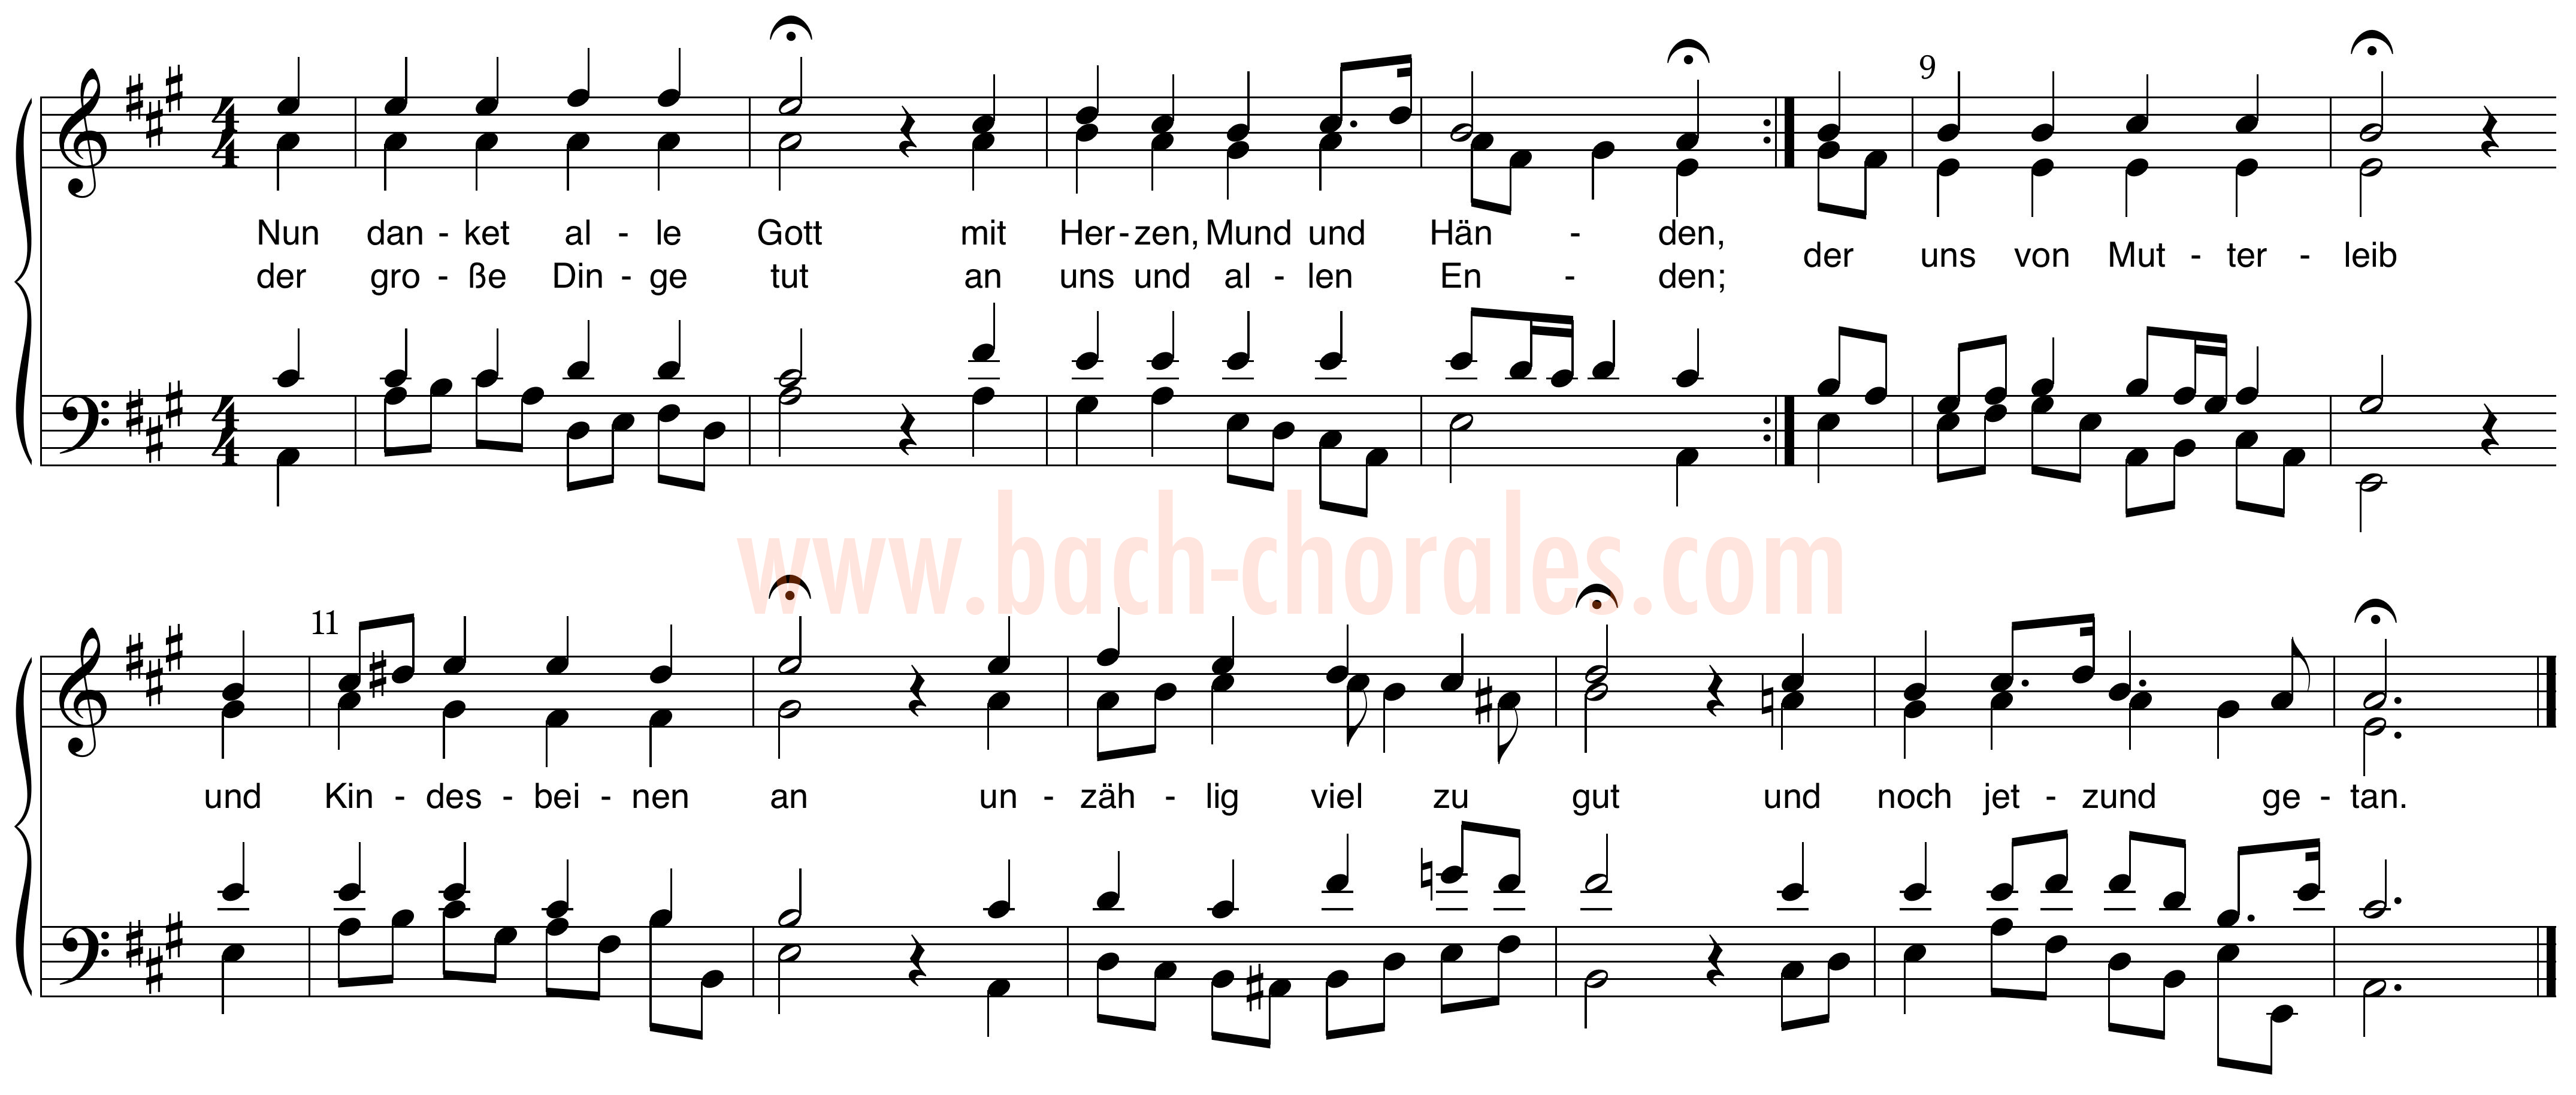 notenbeeld BWV 386 op https://www.bach-chorales.com/